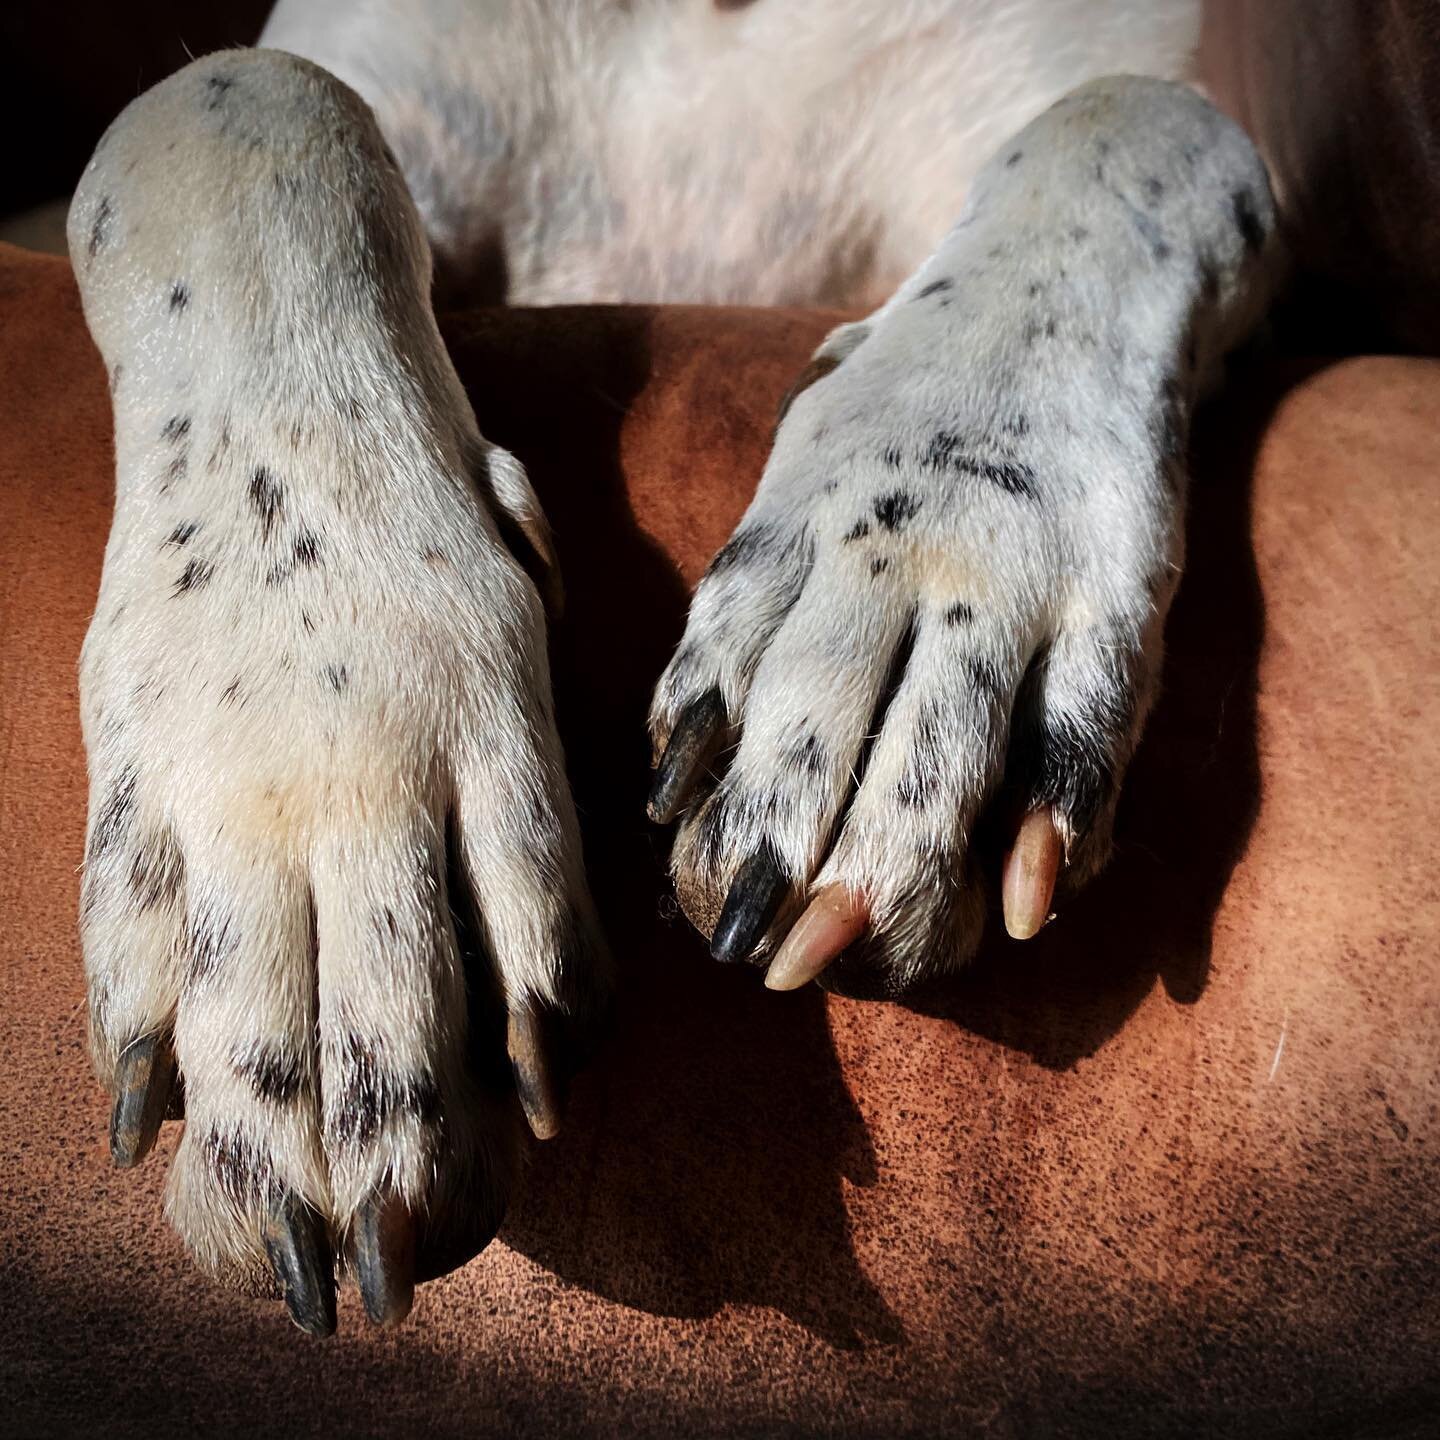 Dog toes. 
#doglife #dogsofinsta #doglovers #dogisgood #dogphotography #dogdays #dogmodel #paws #catahoulaleoparddog